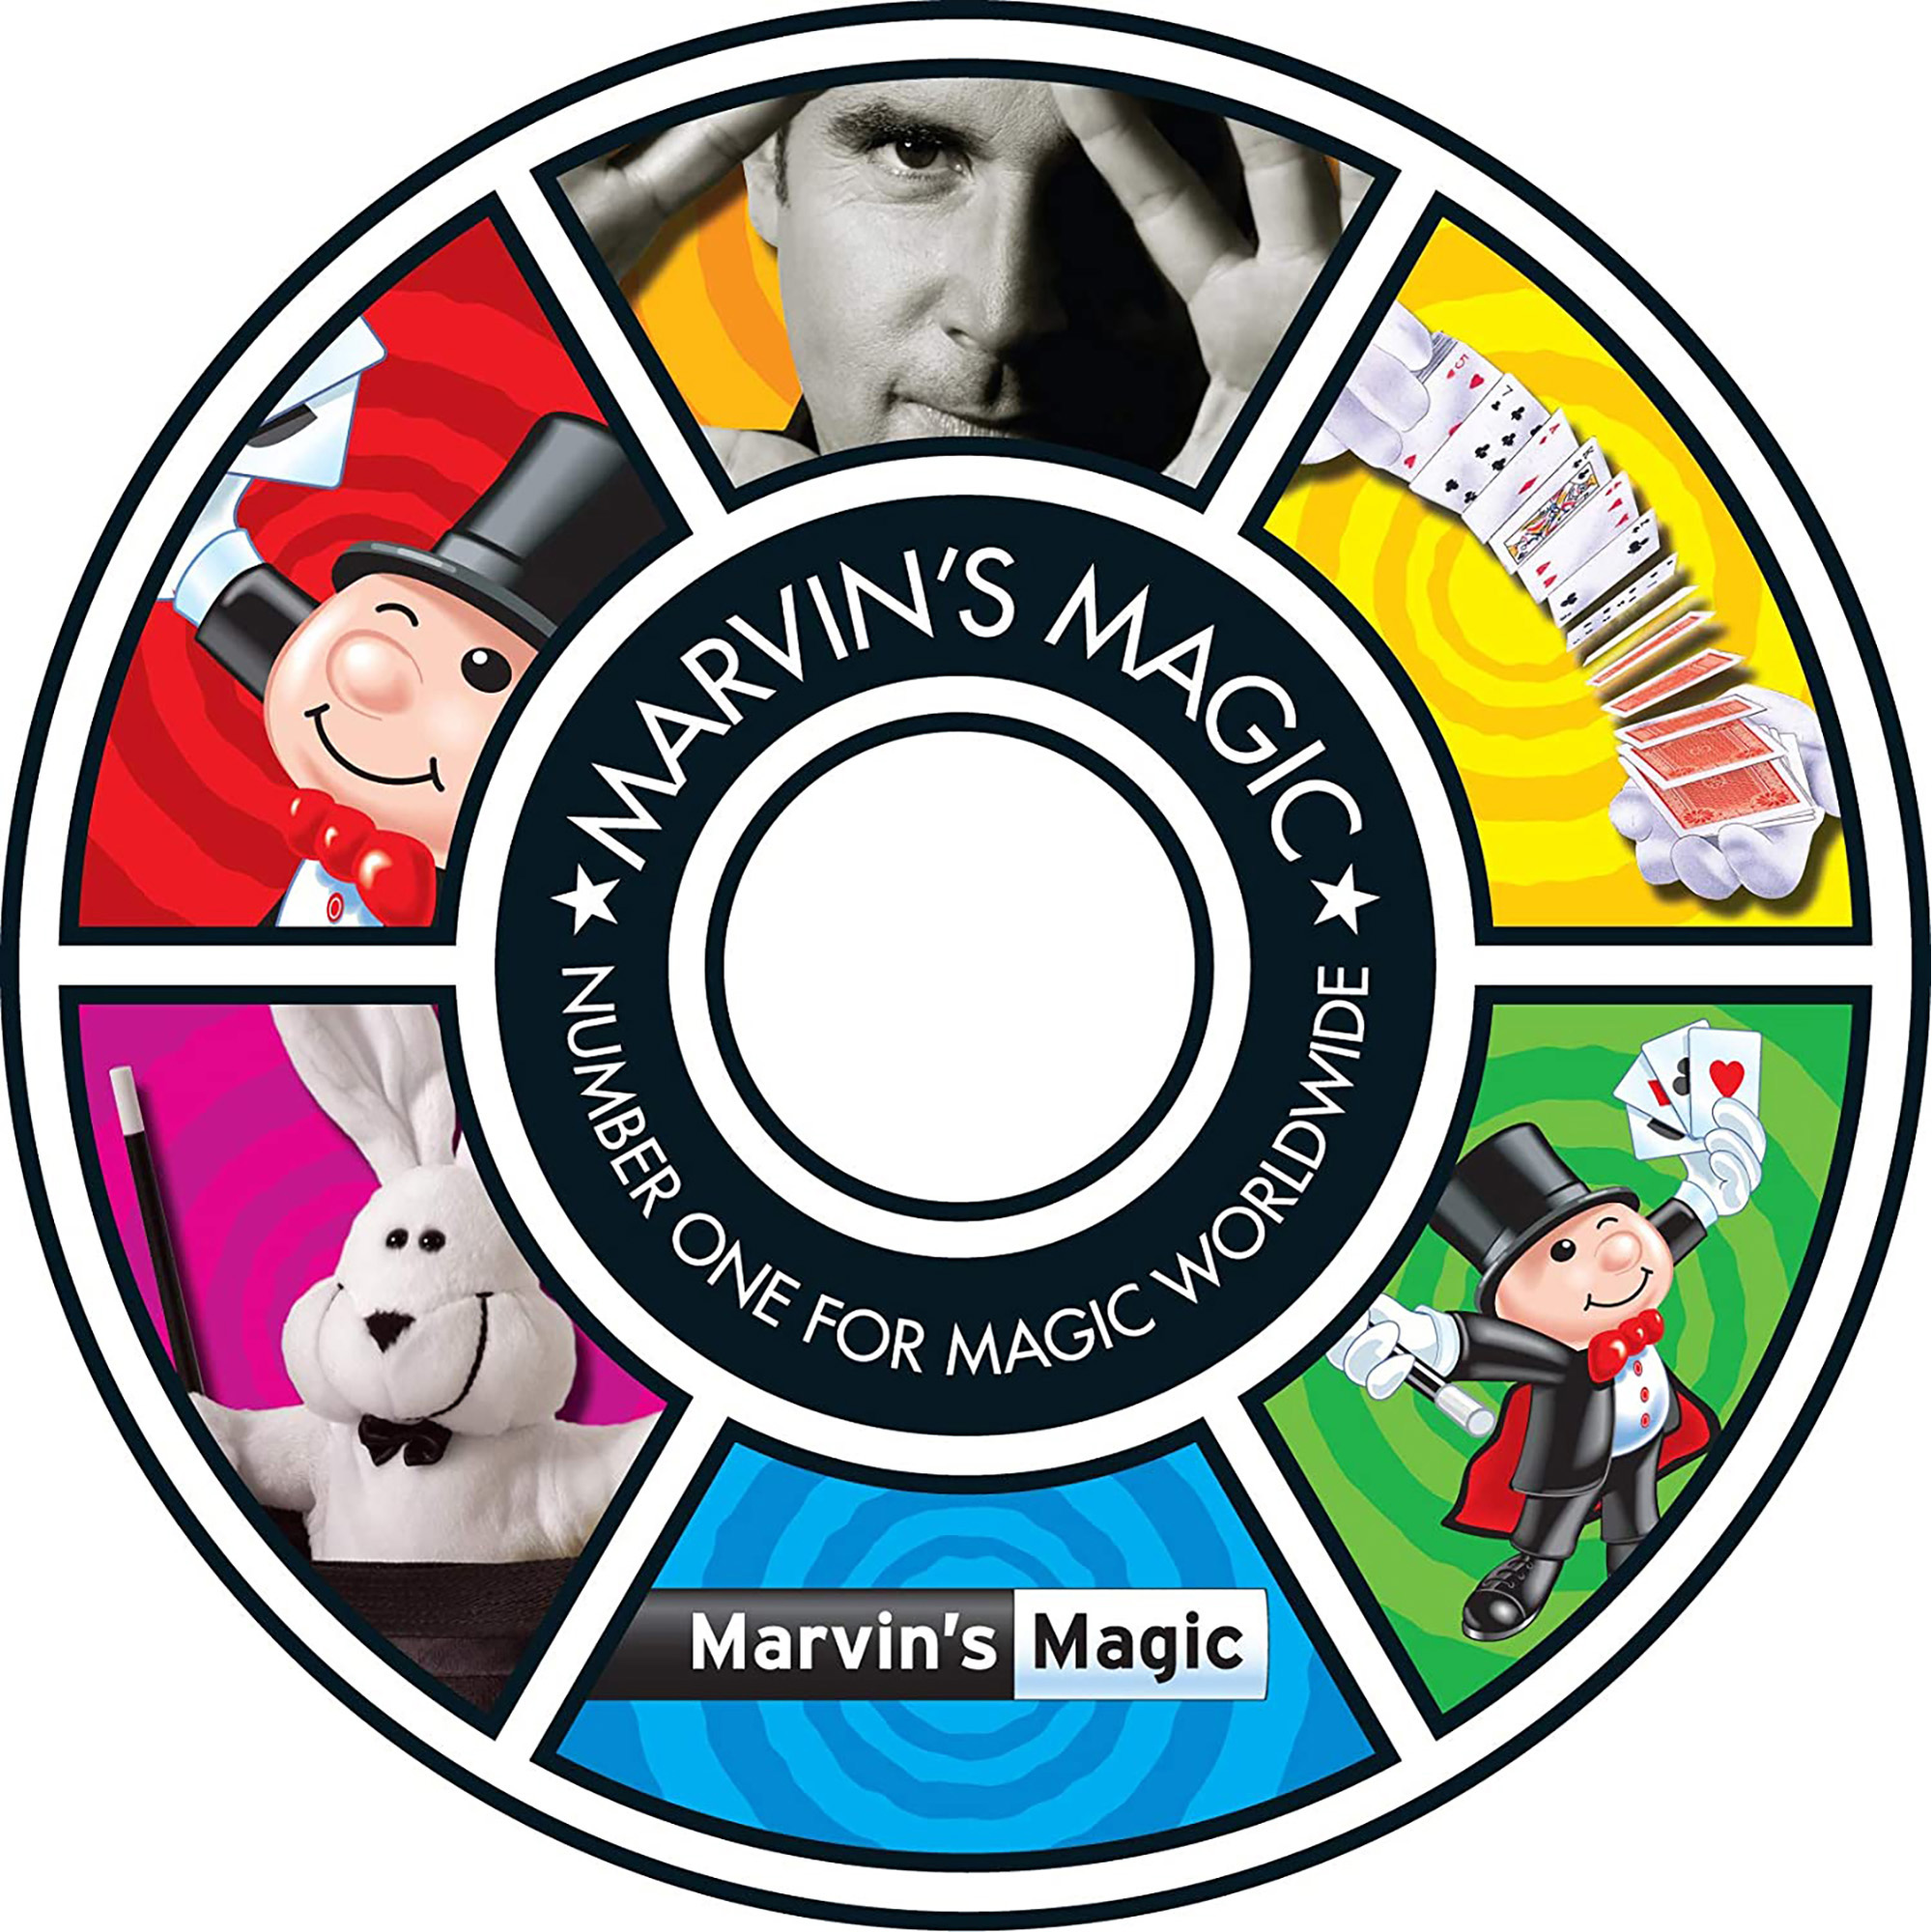 Marvin's amazing magic 30 tricks 1 - Marvin's Magic